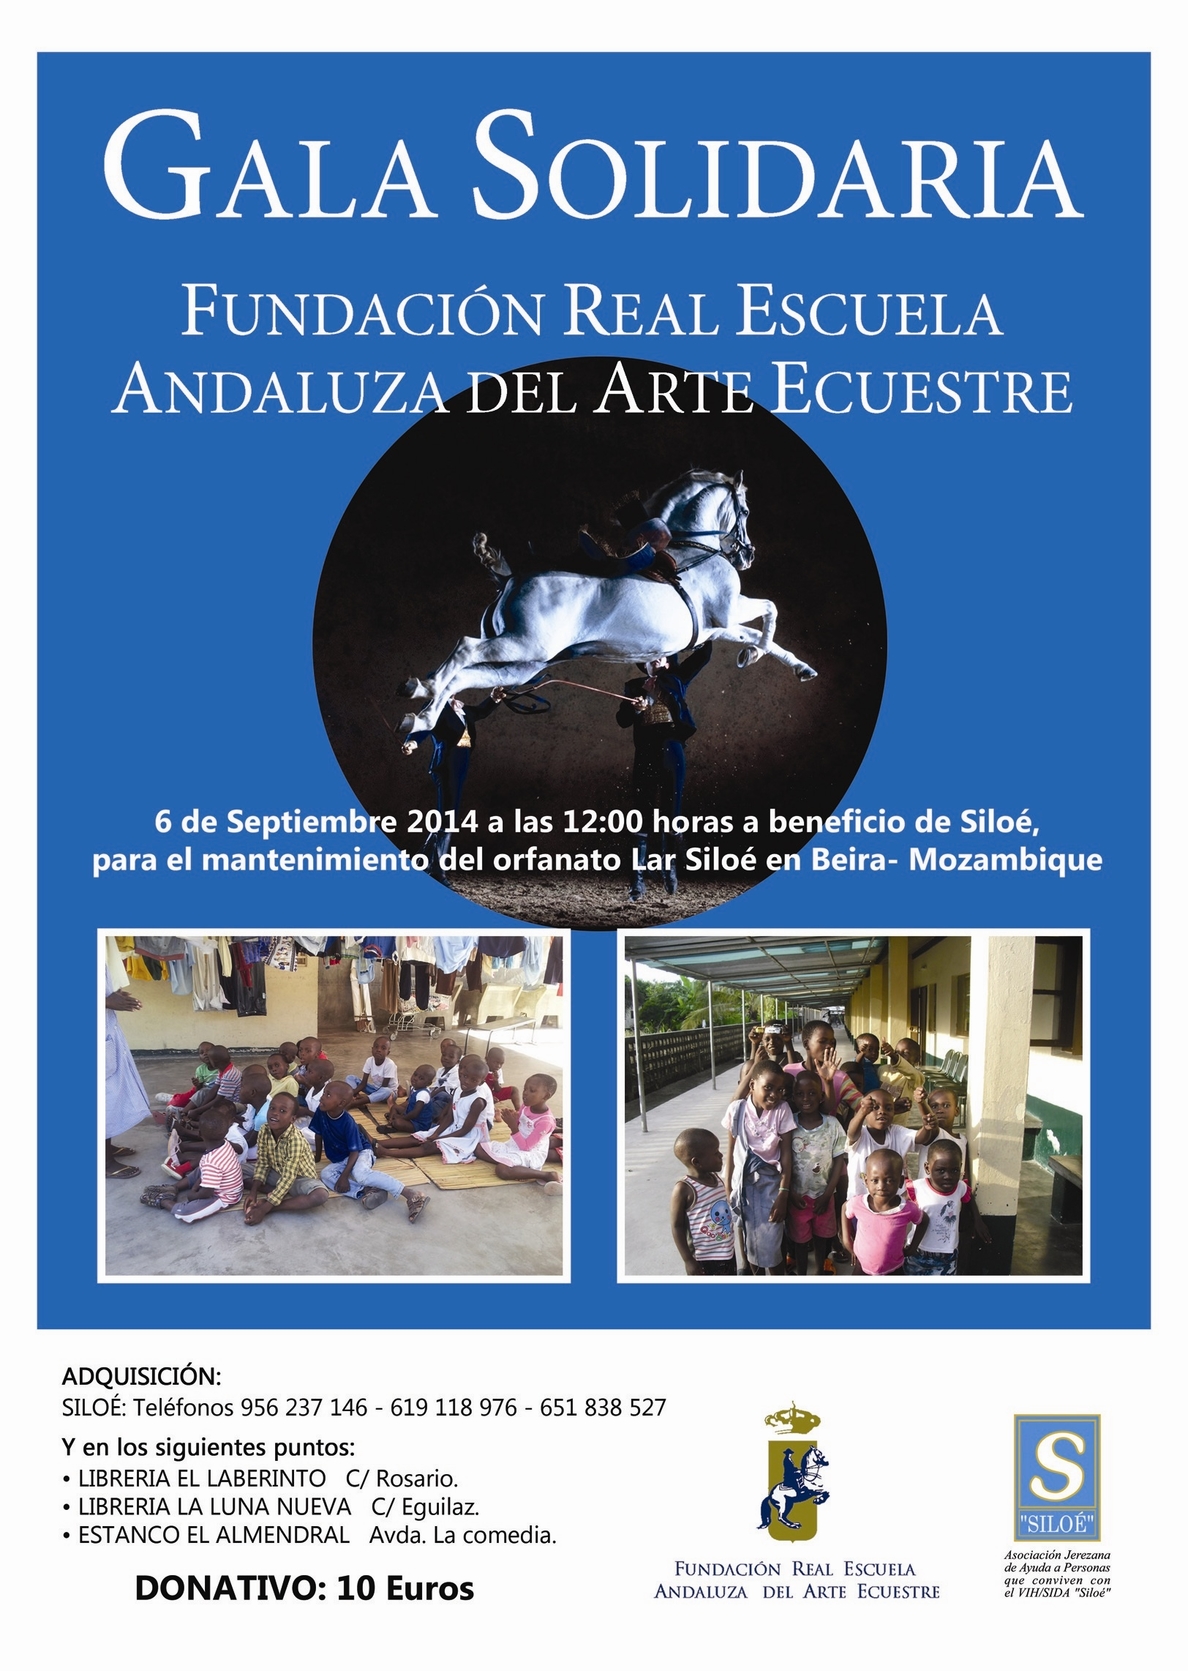 La Real Escuela Andaluza del Arte Ecuestre presta su talento en una gala solidaria a beneficio de Siloé